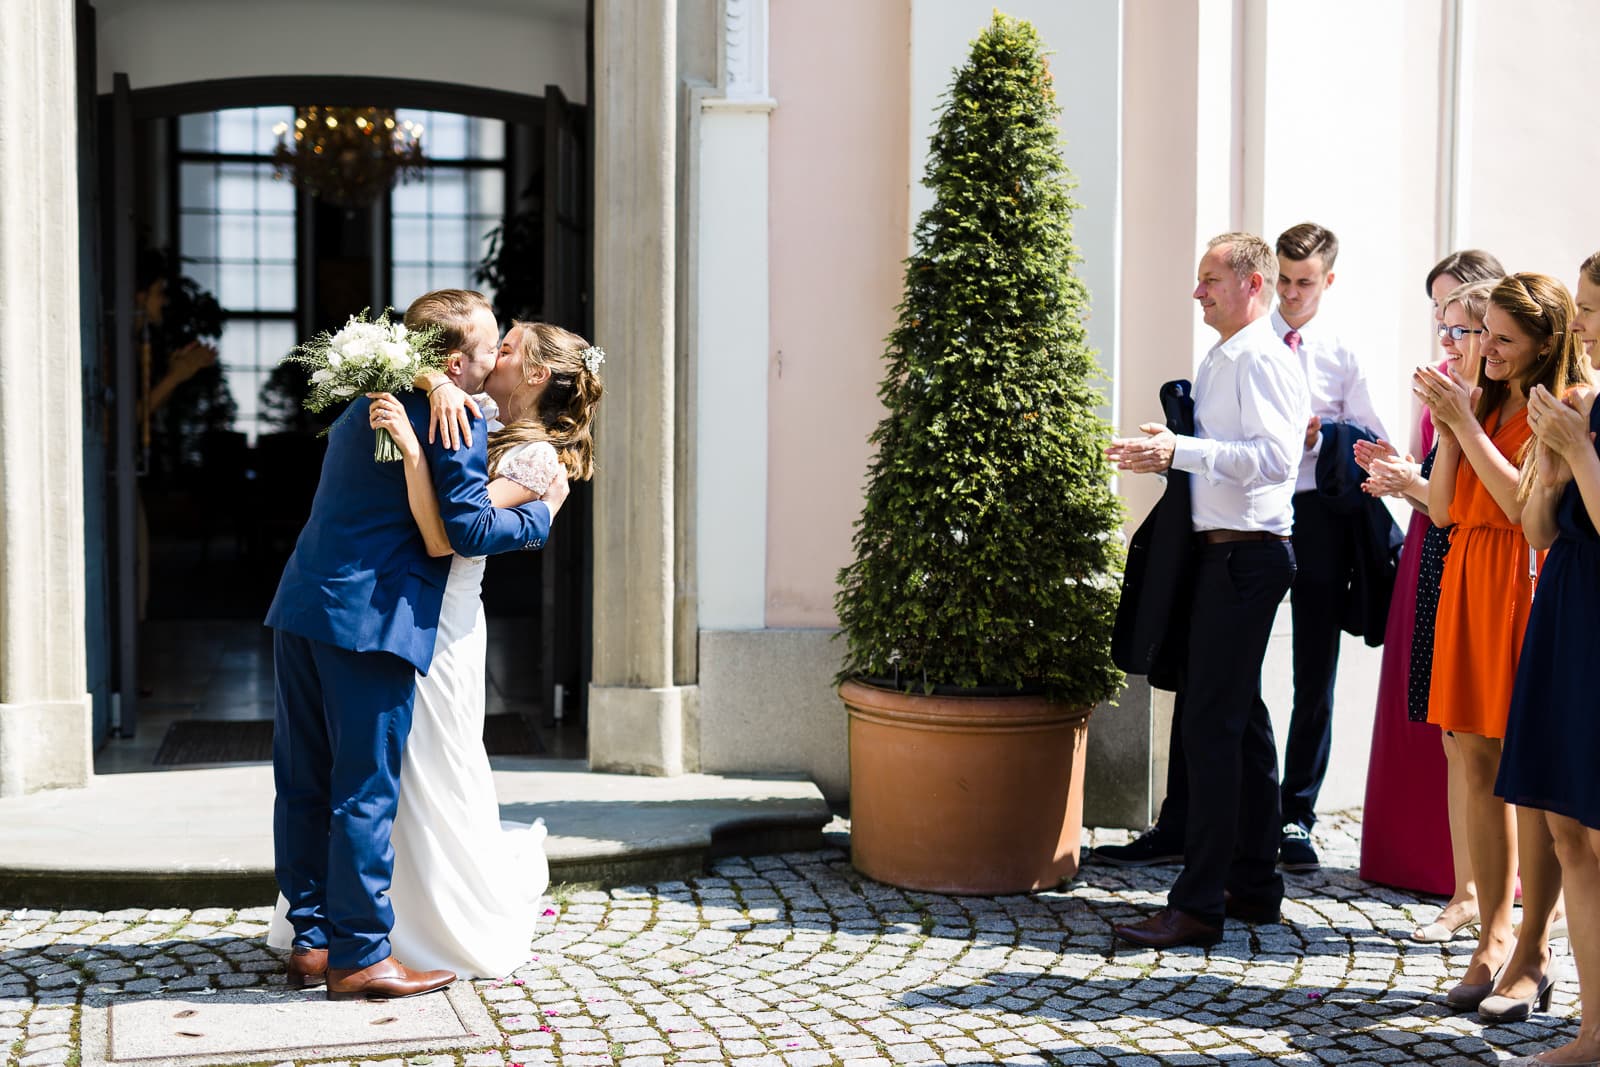 schloss lamberg steyr hochzeit hochzeitslocation oberoesterreich wedding photography photographer 057 christiane eckl 2017 06 03 15 27 28